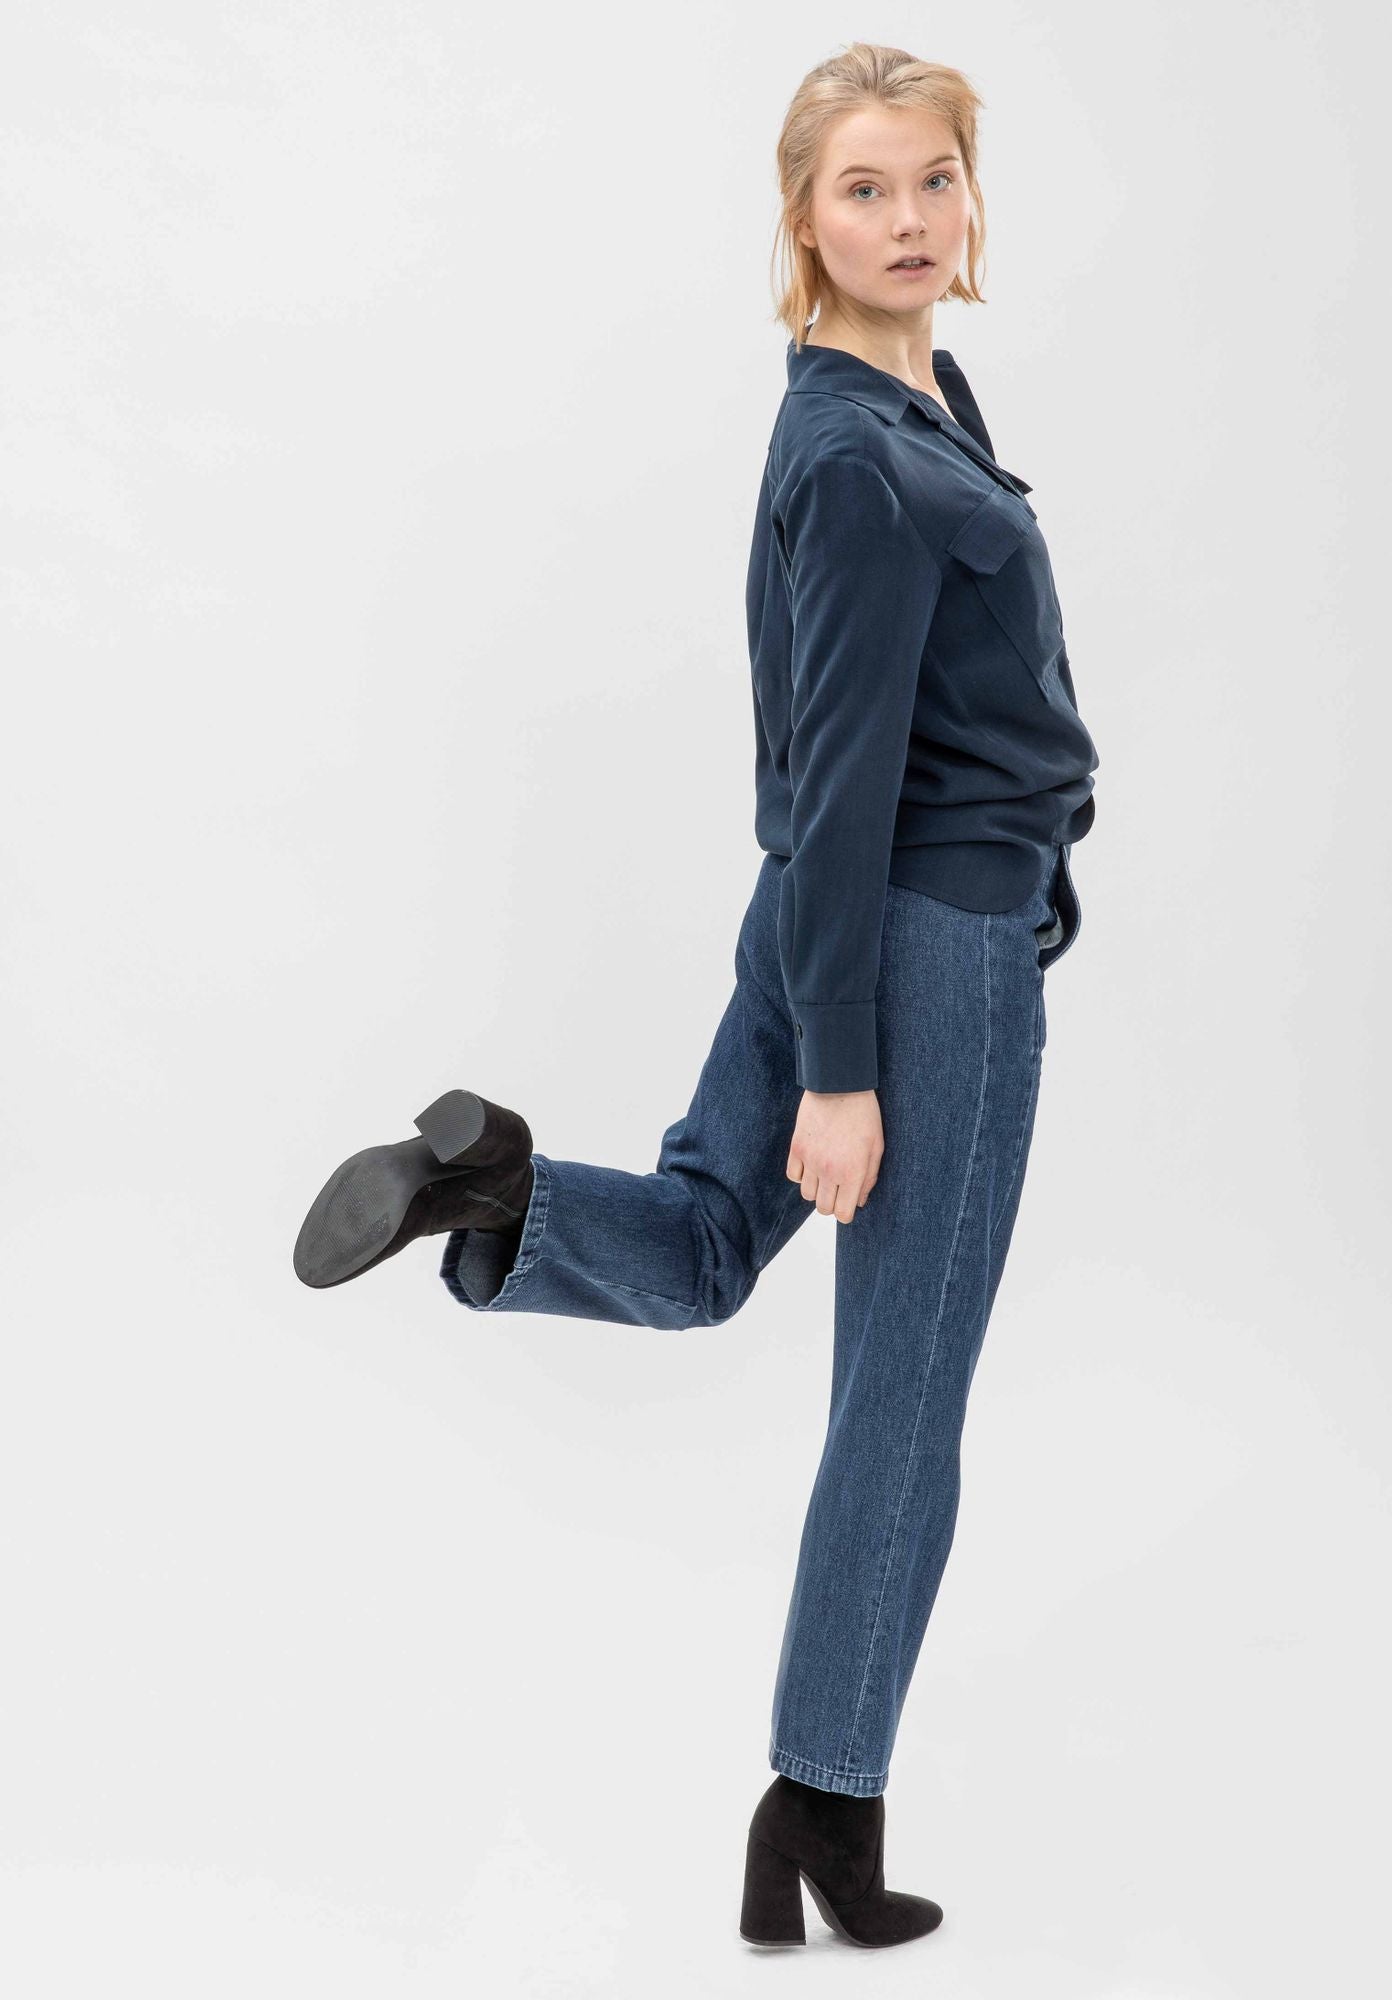 Jeans GREVIE in dunkelblau von LOVJOI aus Bio-Baumwolle